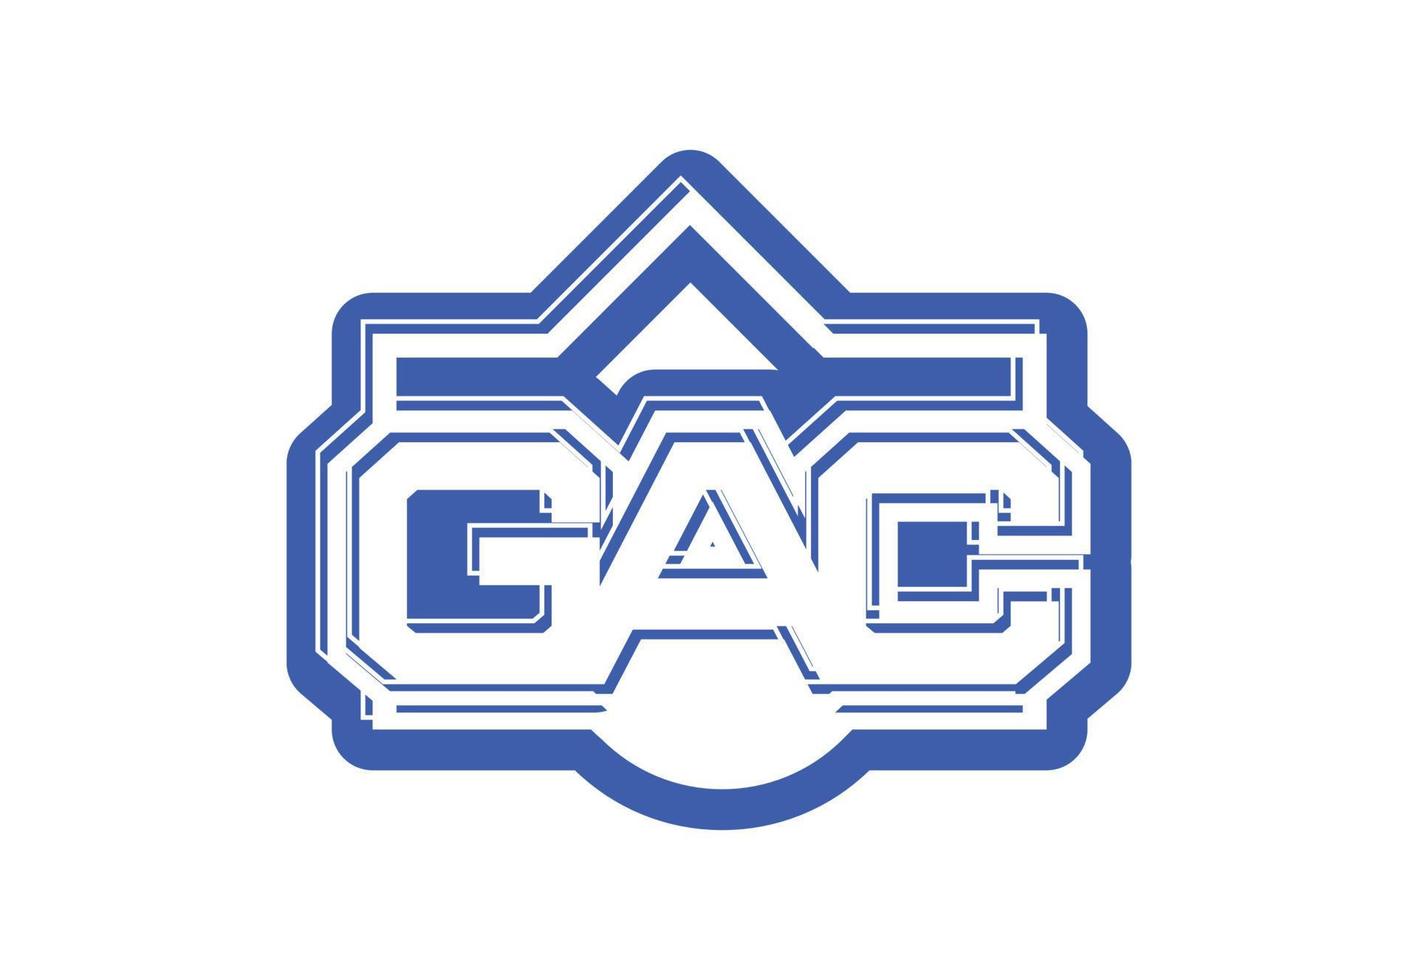 gac-Buchstaben-Logo und Aufkleber-Design-Vorlage vektor